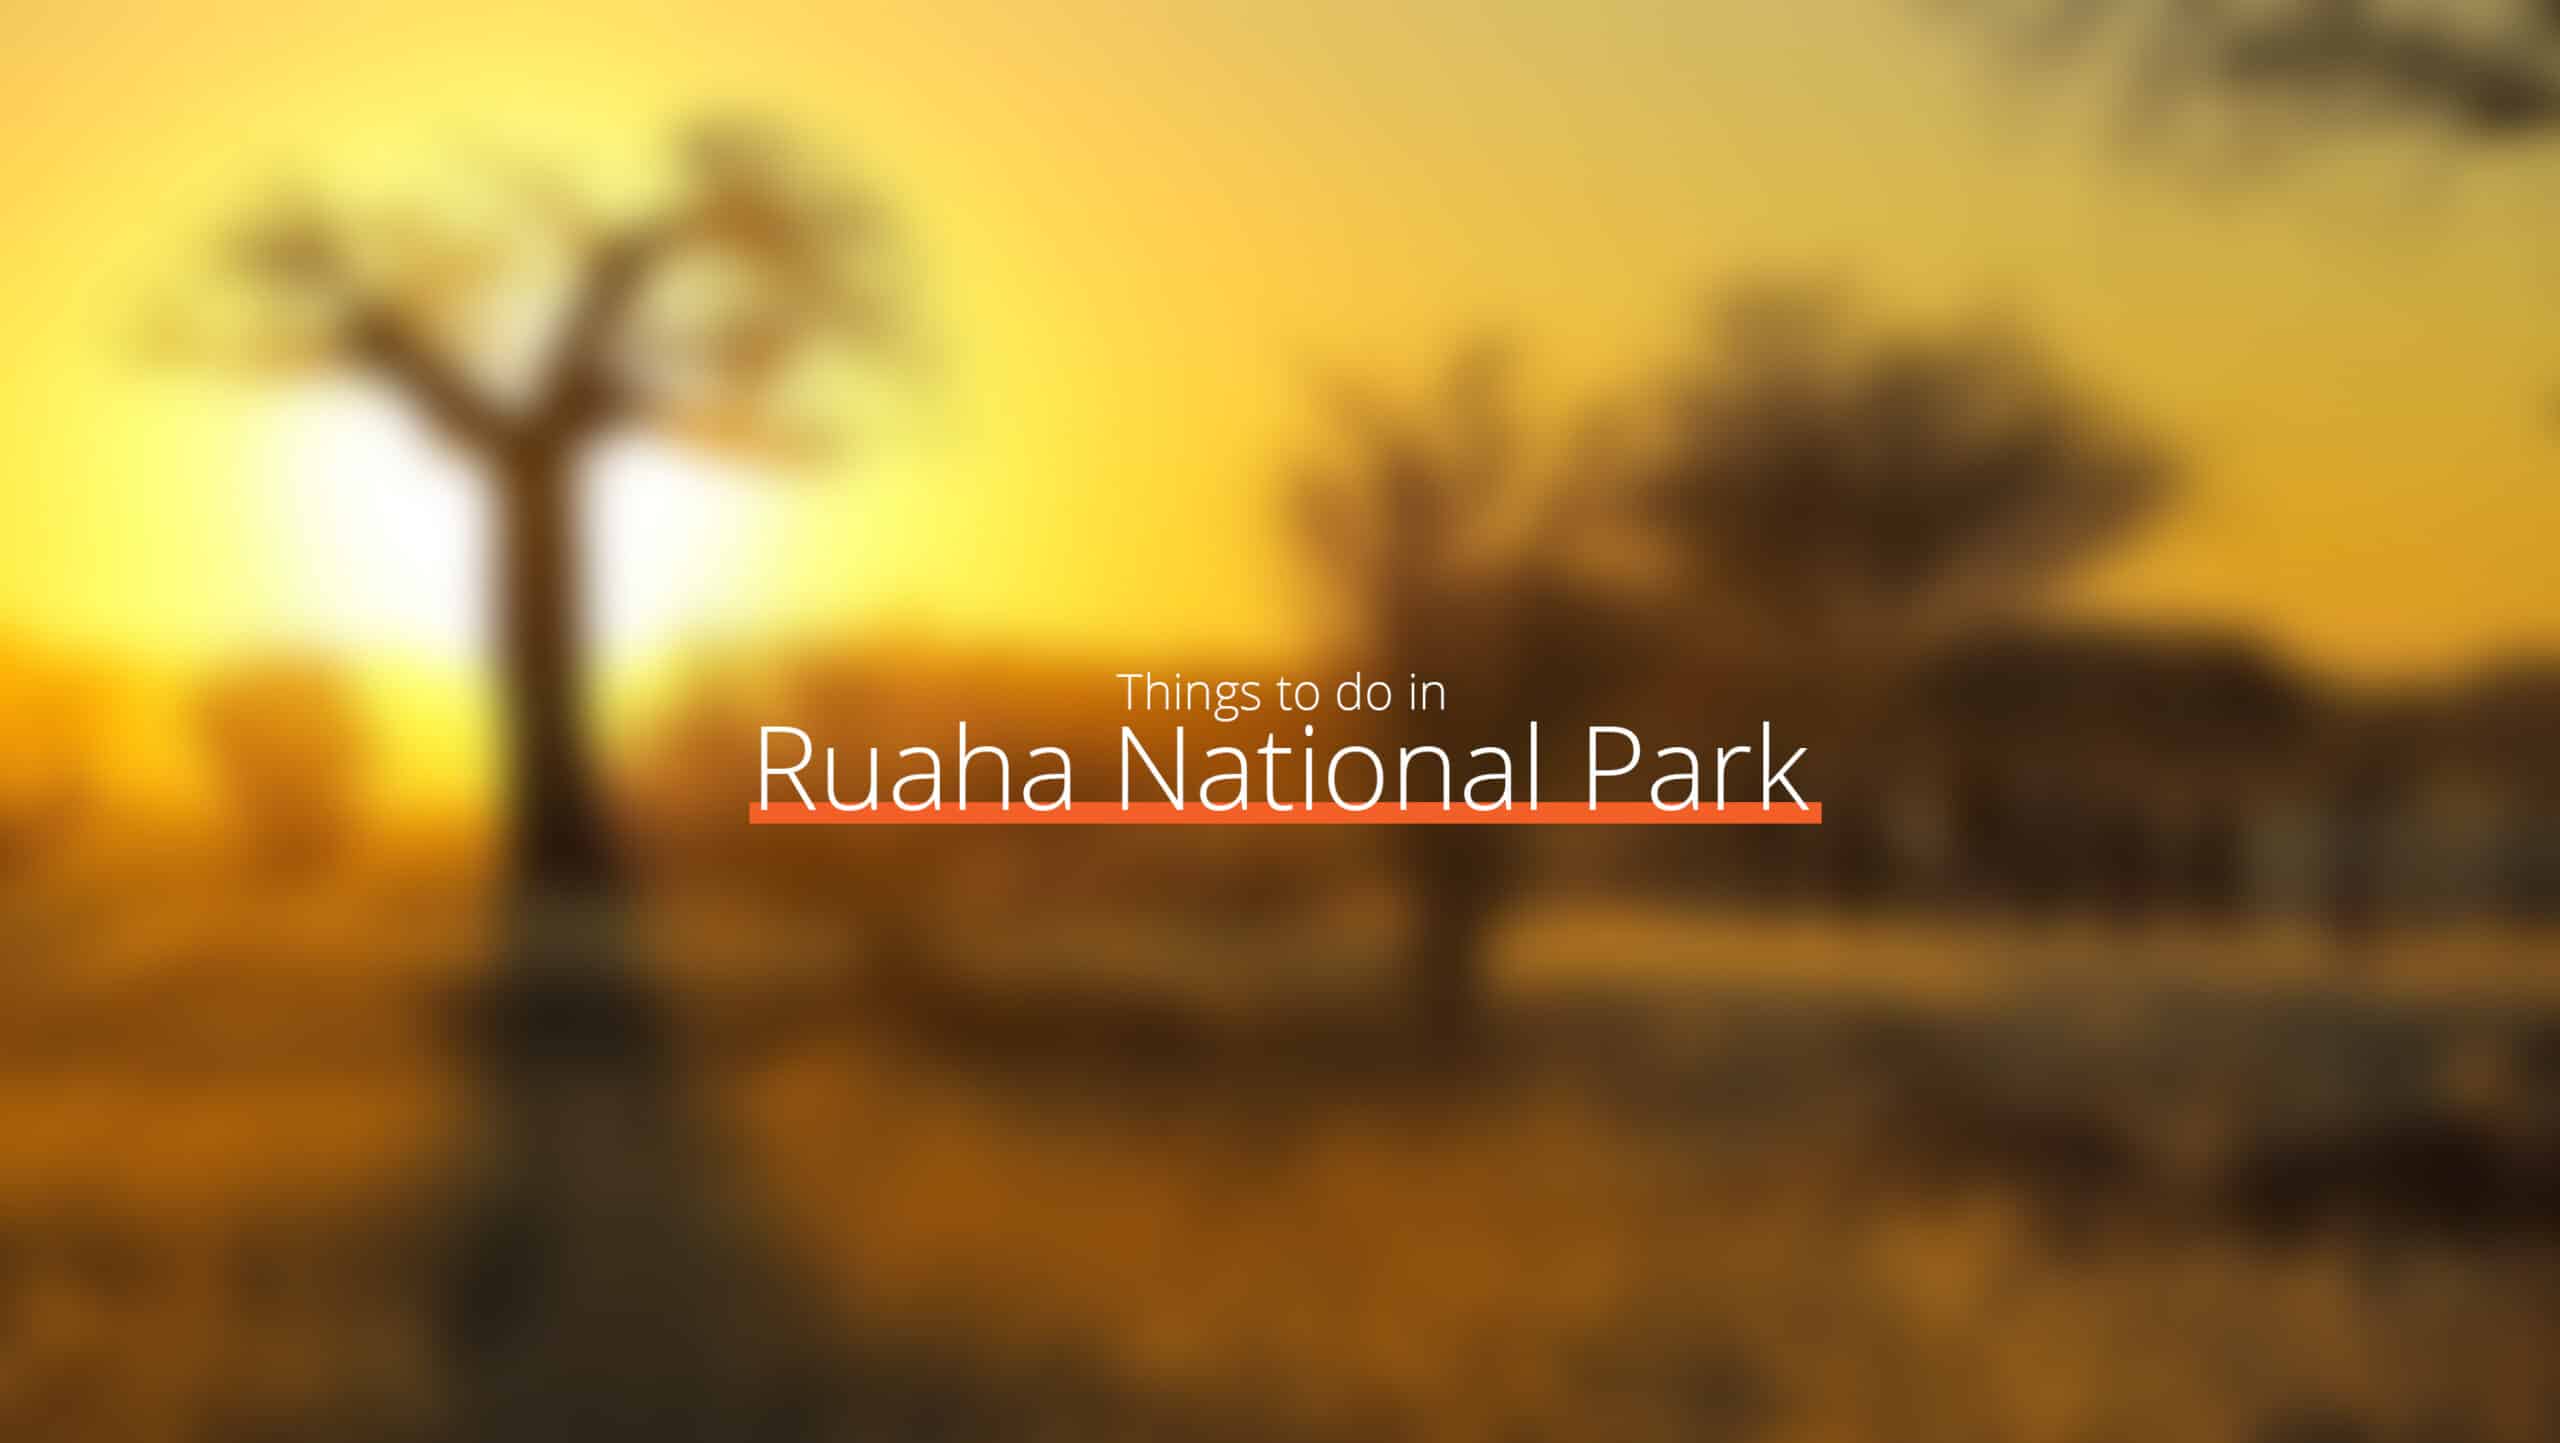 坦桑尼亚 - ruaha 国家公园规模 - 西部赛道的去处